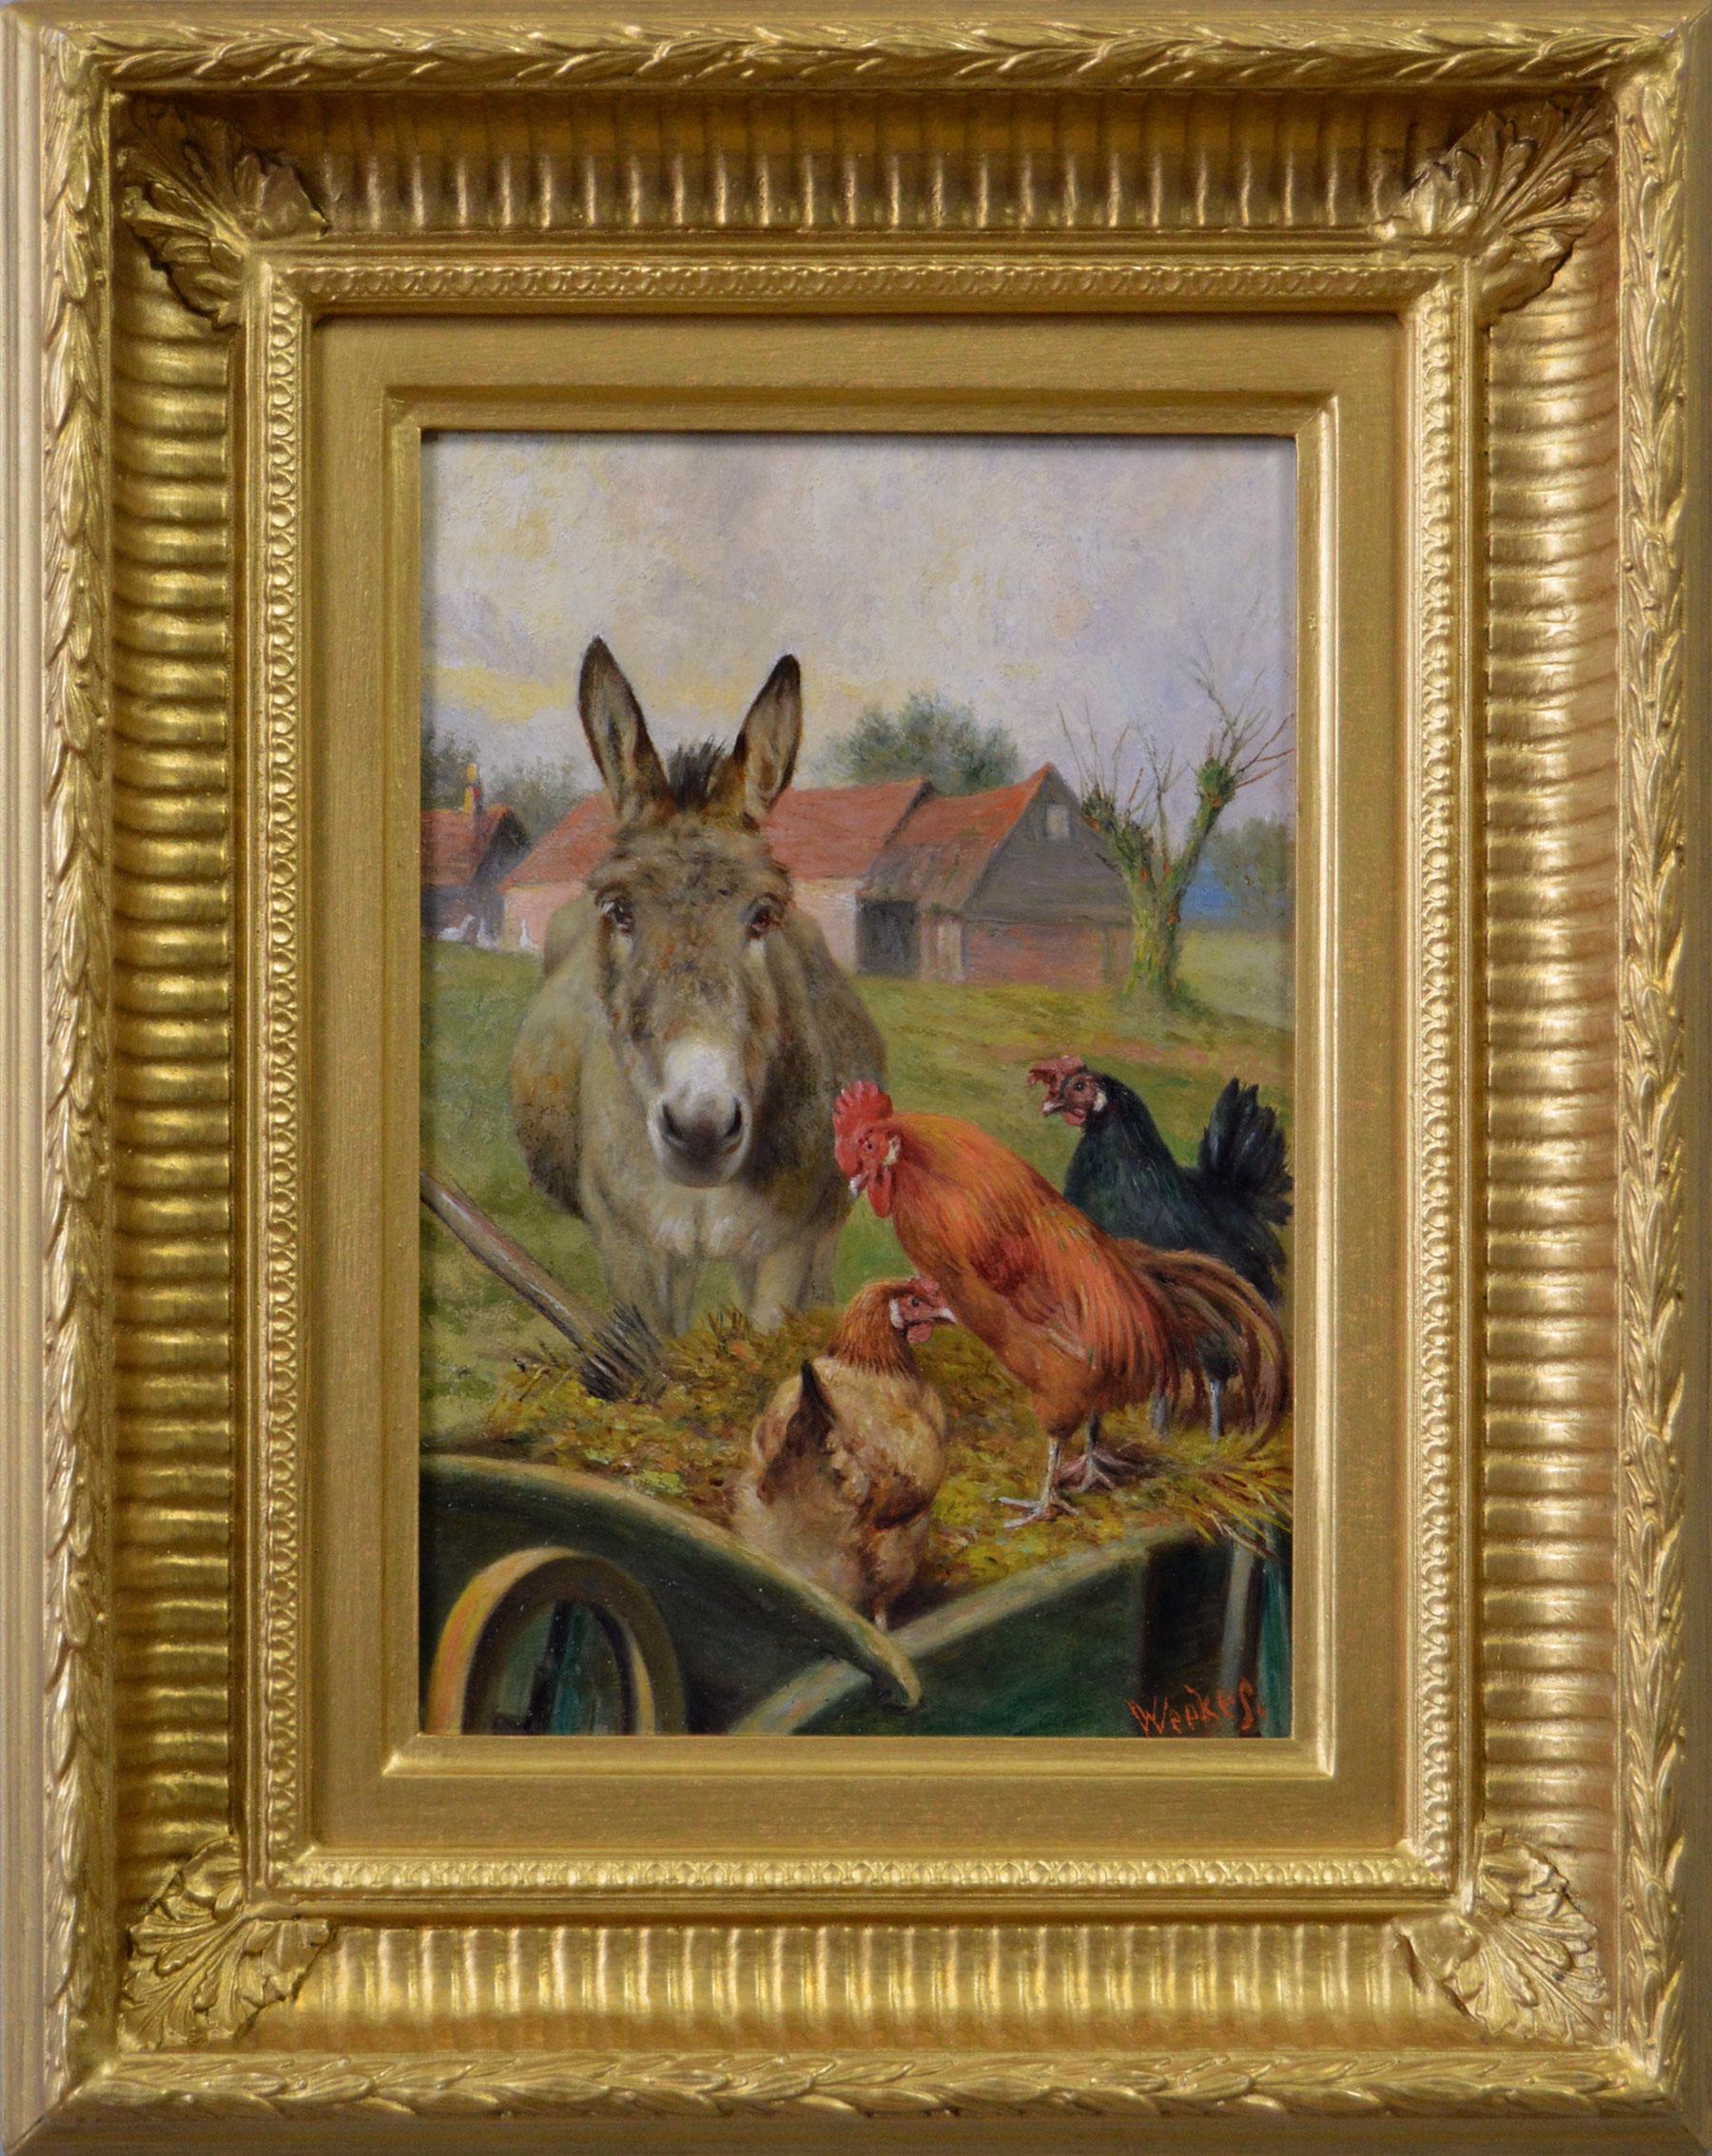 Animal Painting de Herbert William Weekes - Óleo de género del siglo XIX de un burro con un gallo y gallinas